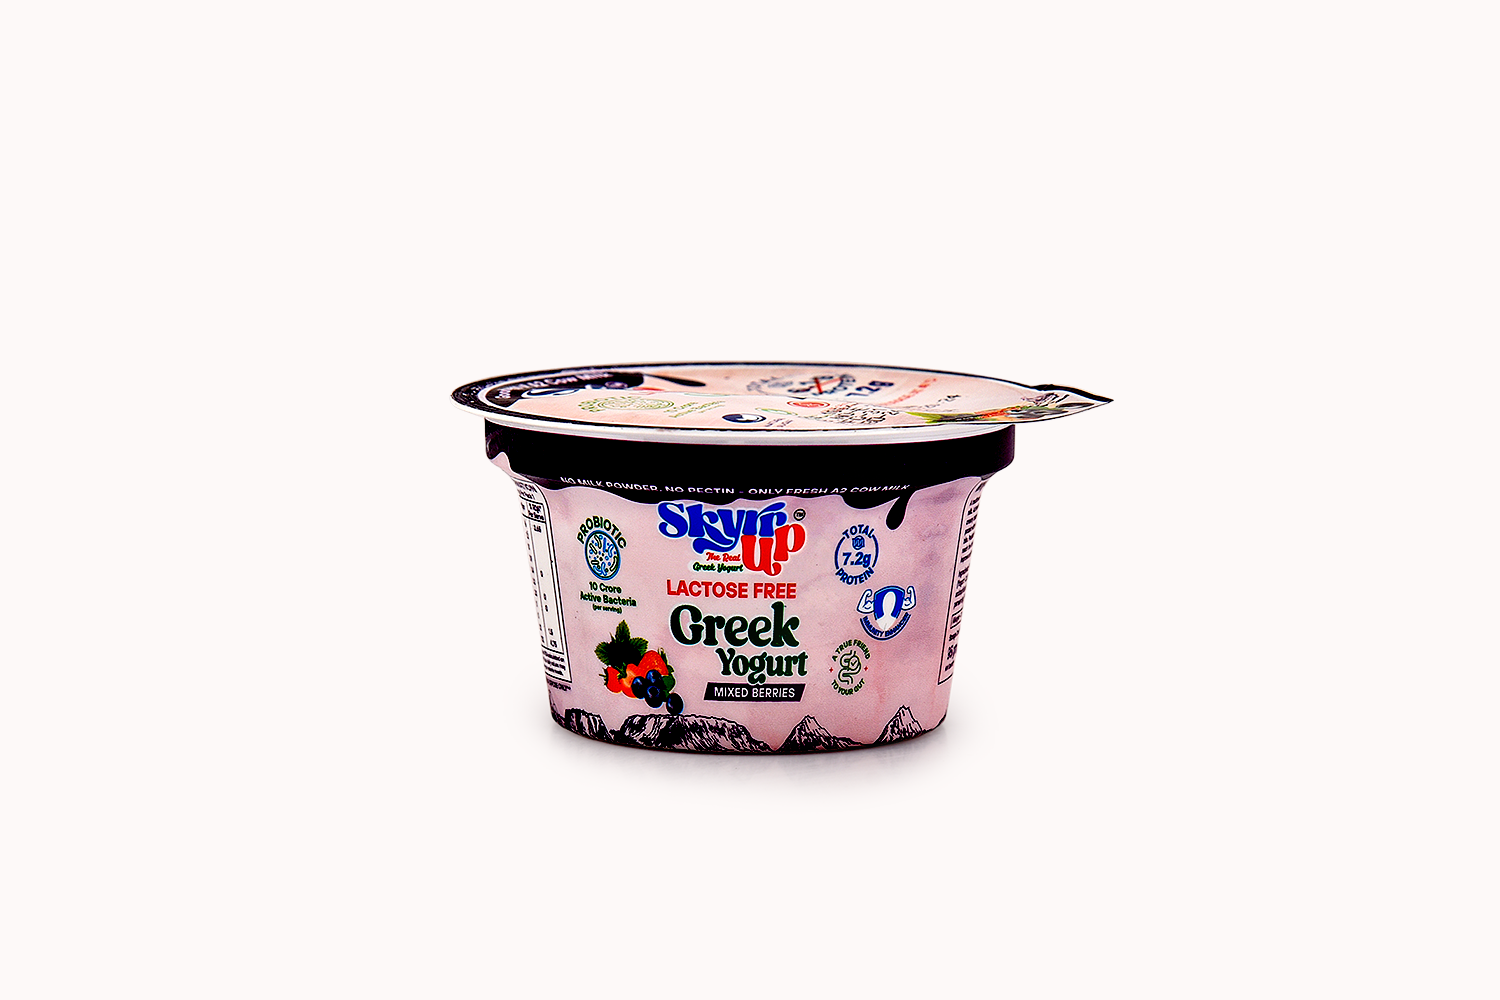 Skyrrup Mixed Berries Lactose-Free Greek Yoghurt